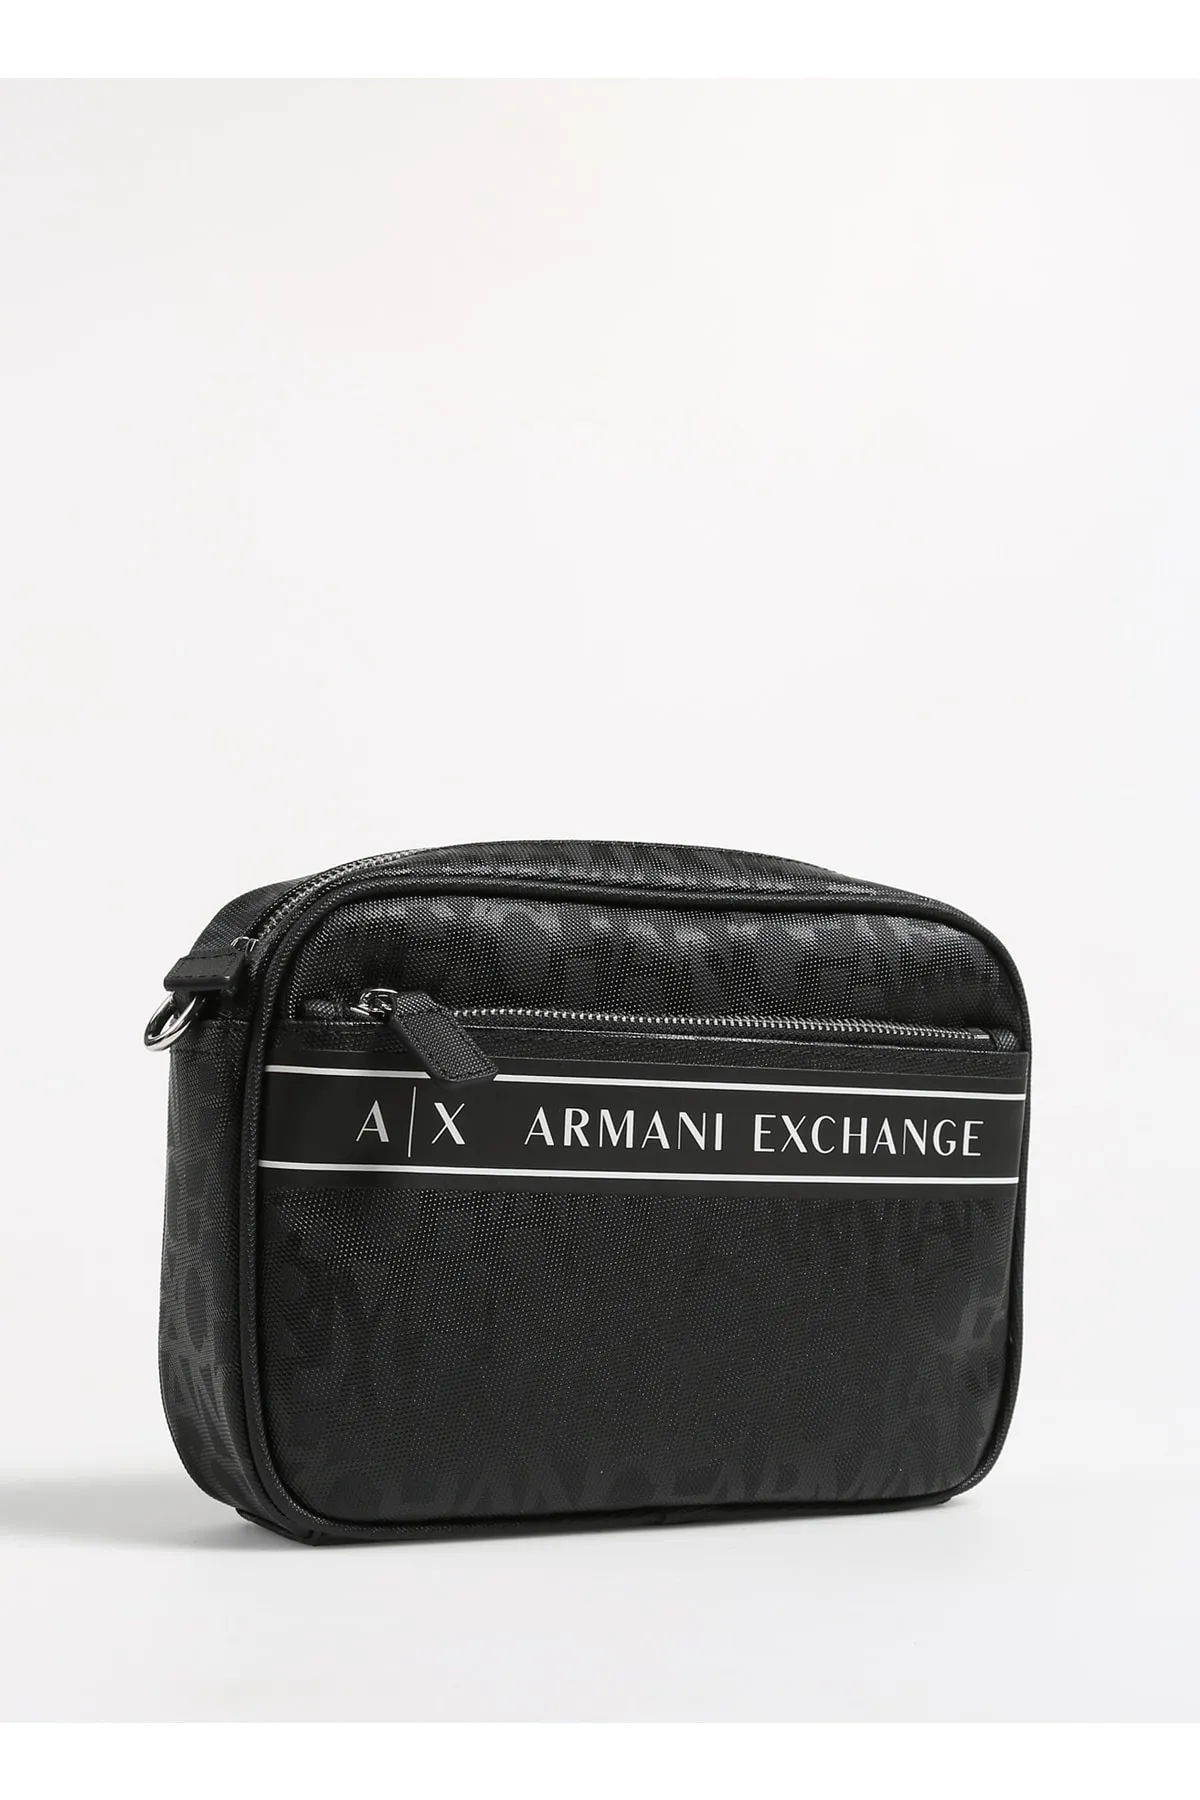 ARMANI EXCHANGE - Kadın Mini Omuz Çantası-Siyah